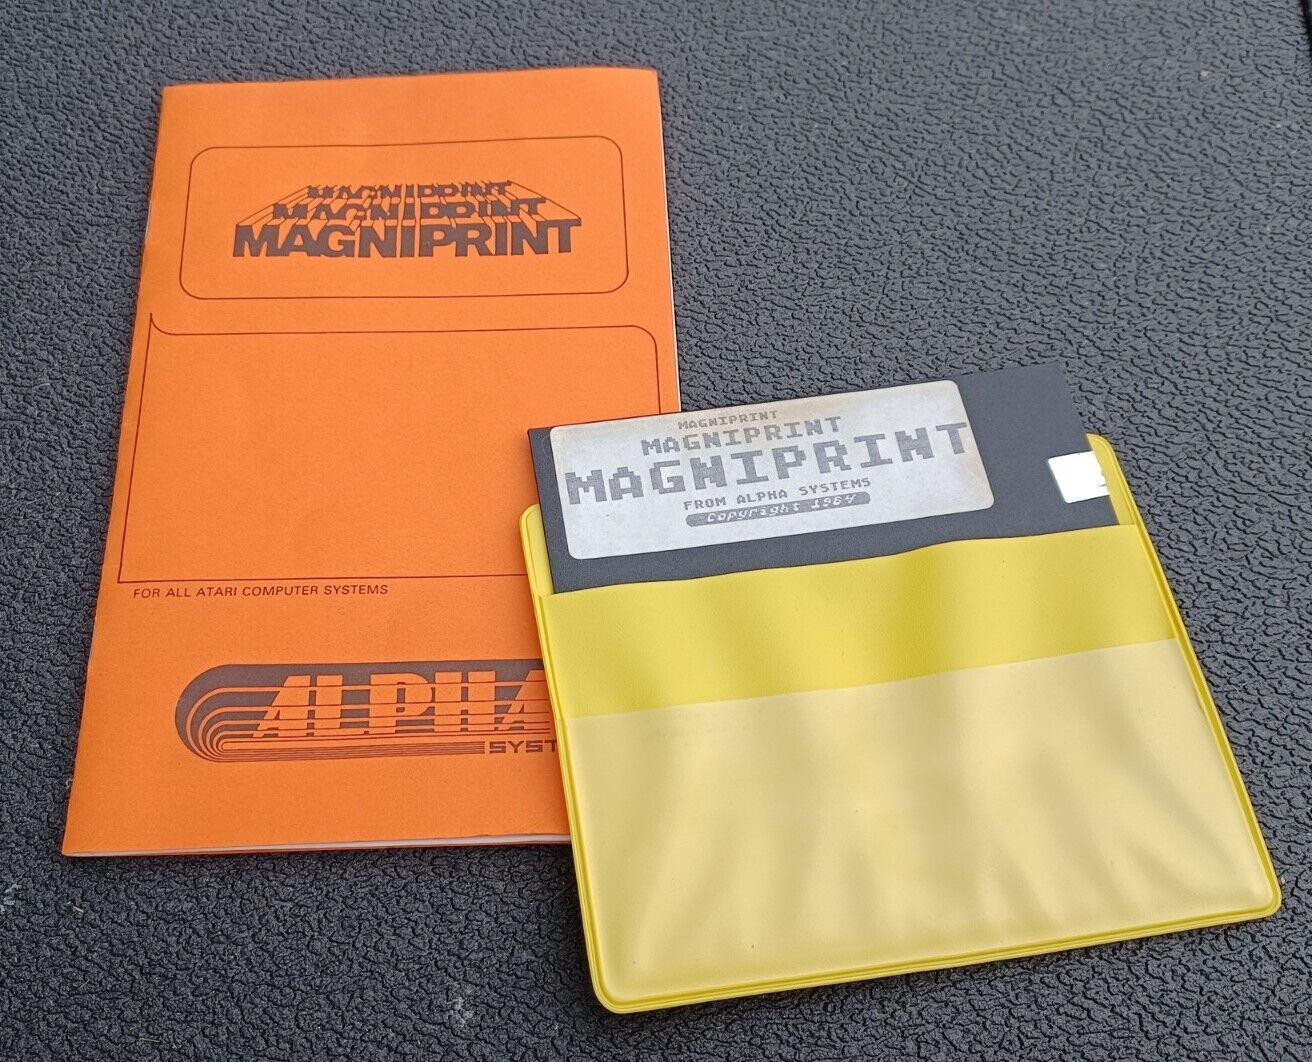 ATARI 400/800 MAGNIPRINT computer Software Floppy Disk & Instruction Manual 1984